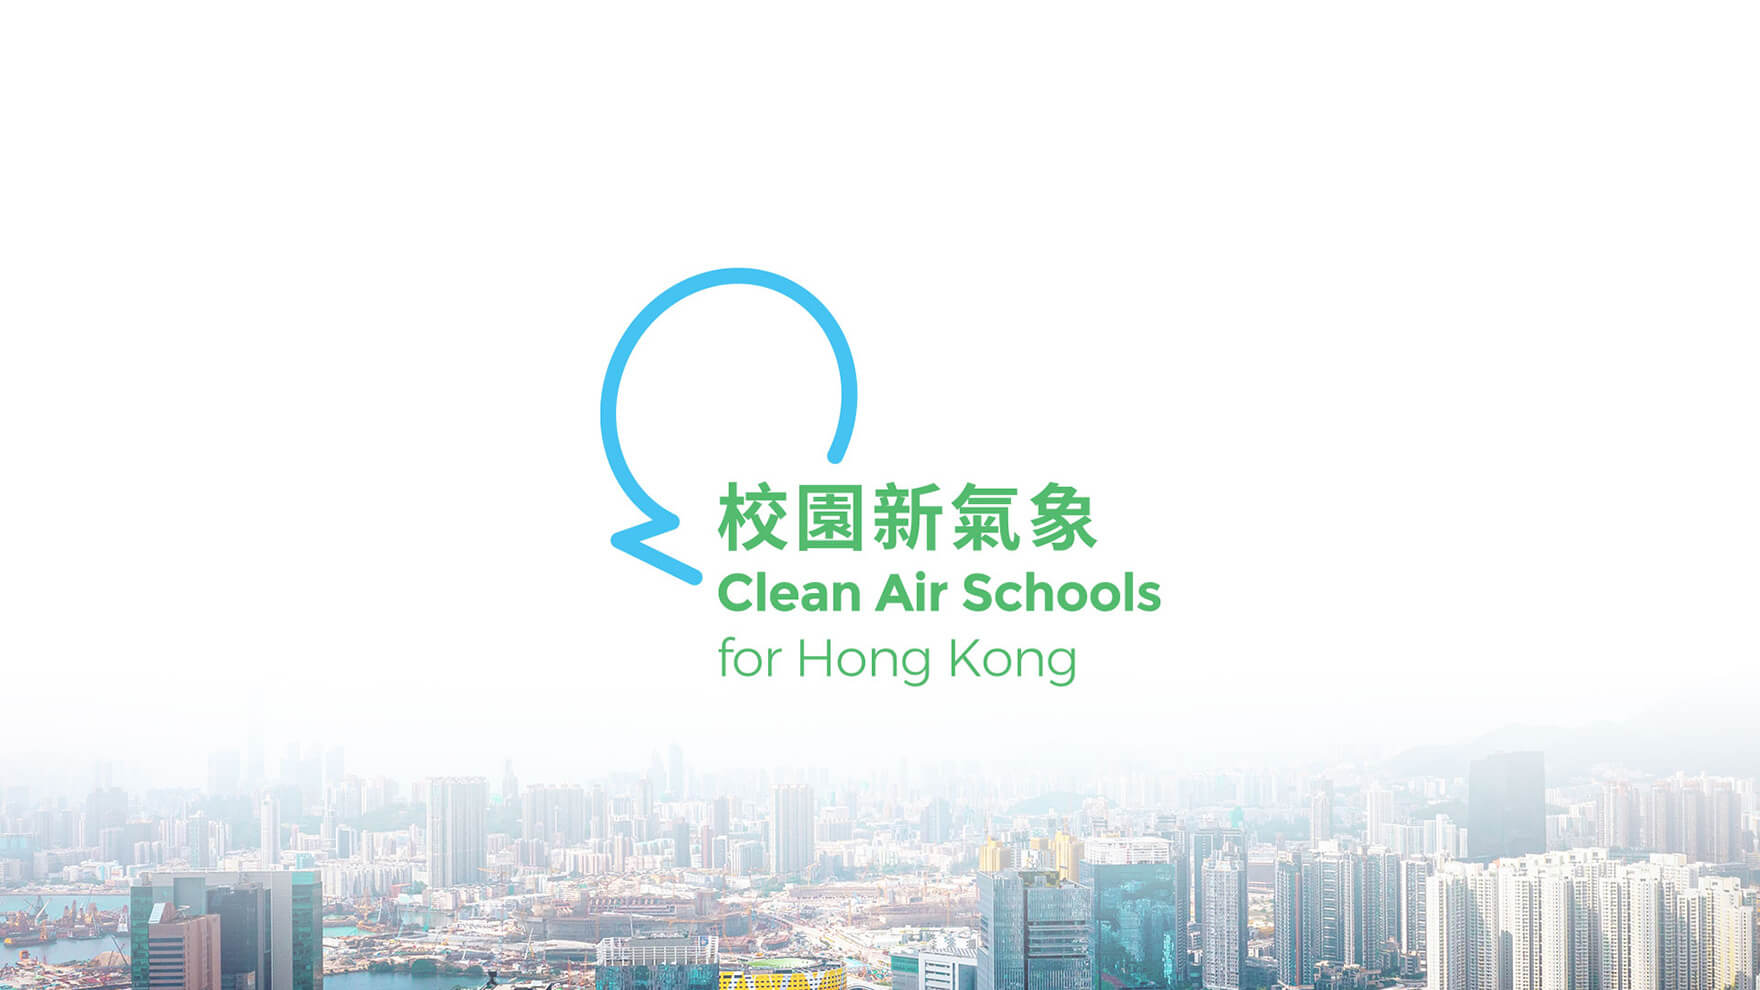 Branding Agency Hong Kong_CleanAirNetwork_CleanAirSchoolsForHongKong_NGO branding_CheddarMedia_1_1760